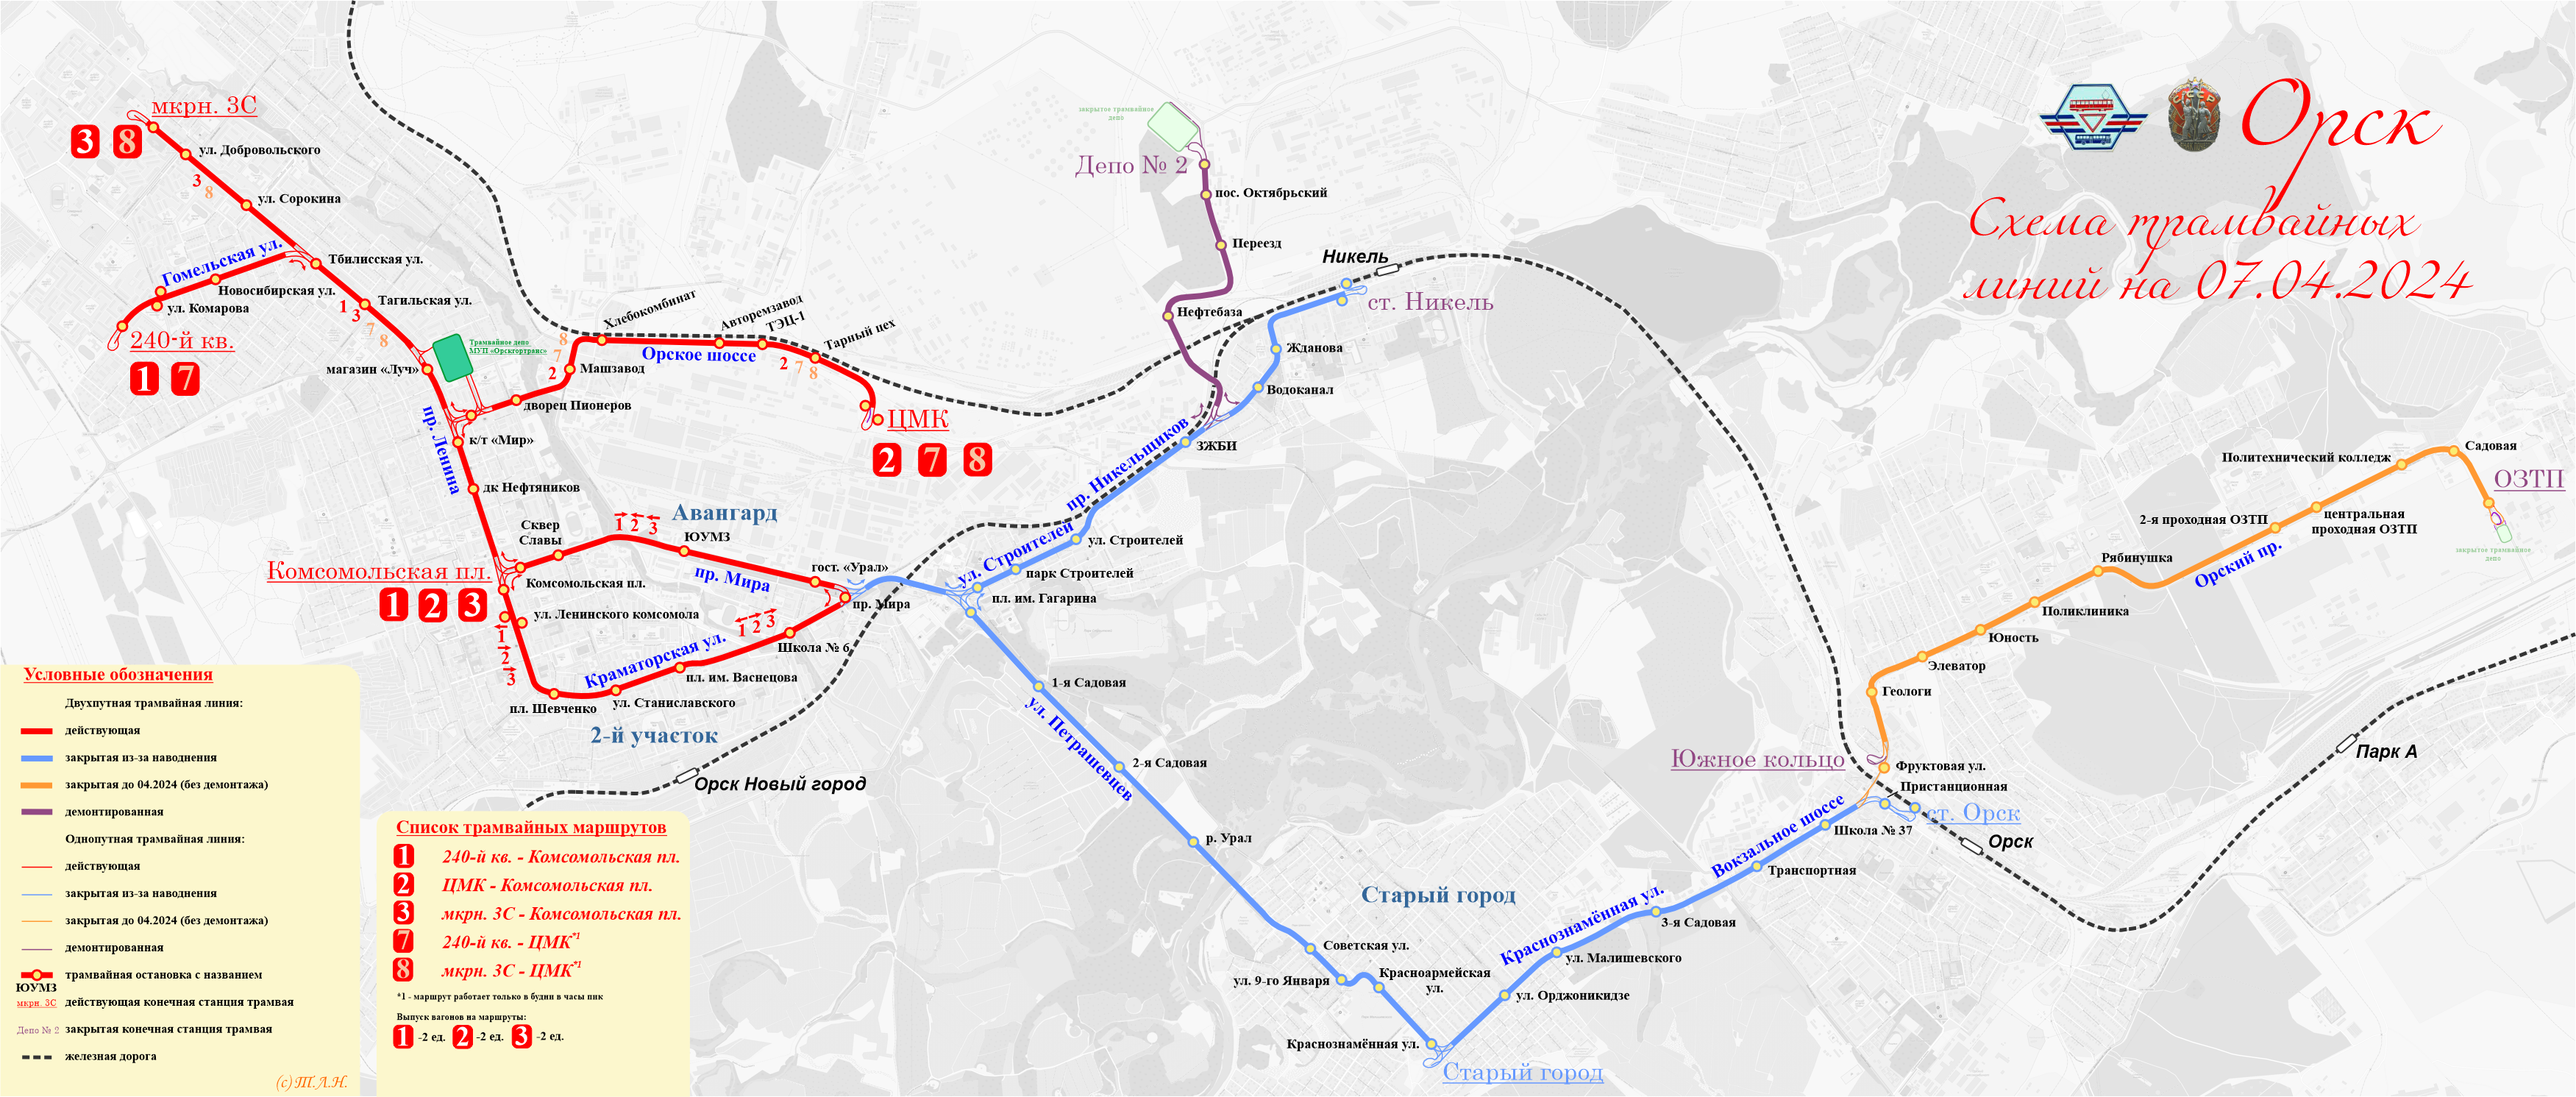 Orskas — 2024 Orsk flood; Orskas — Maps